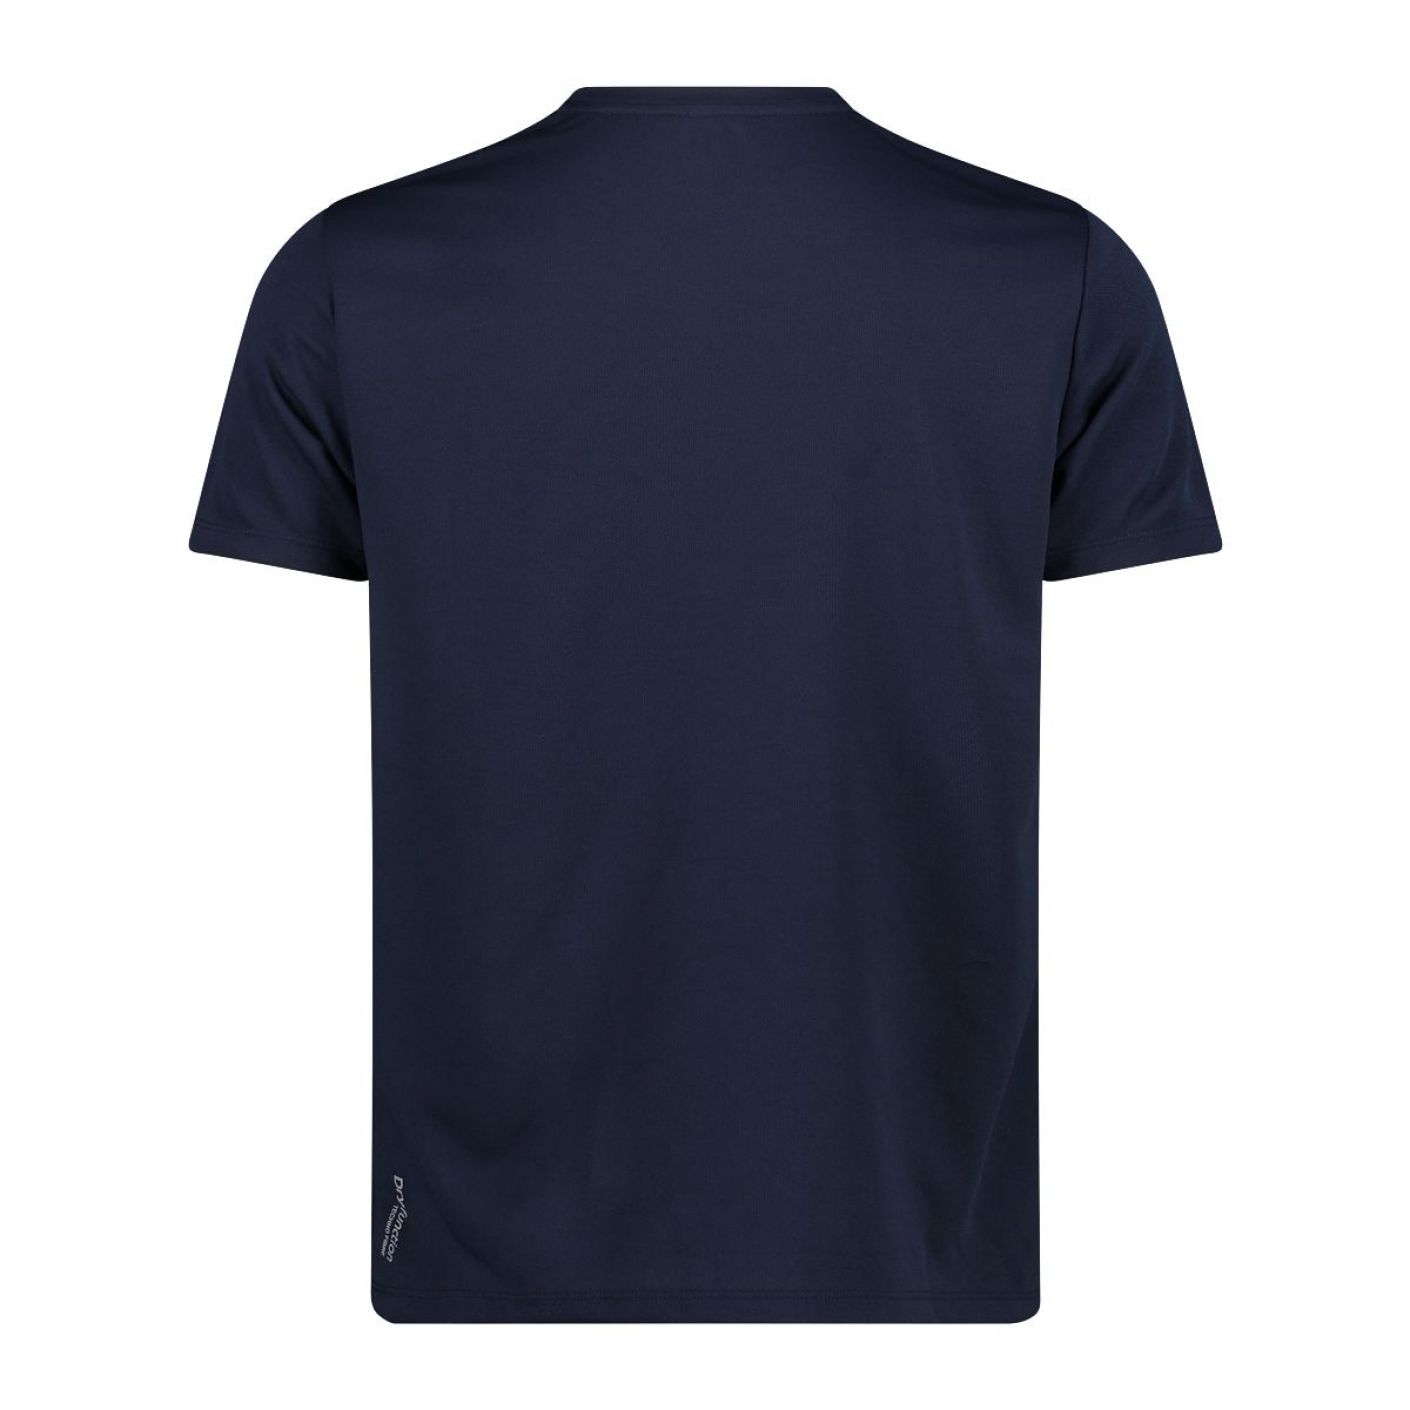 CMP T-Shirt tinta unita Blu da Uomo